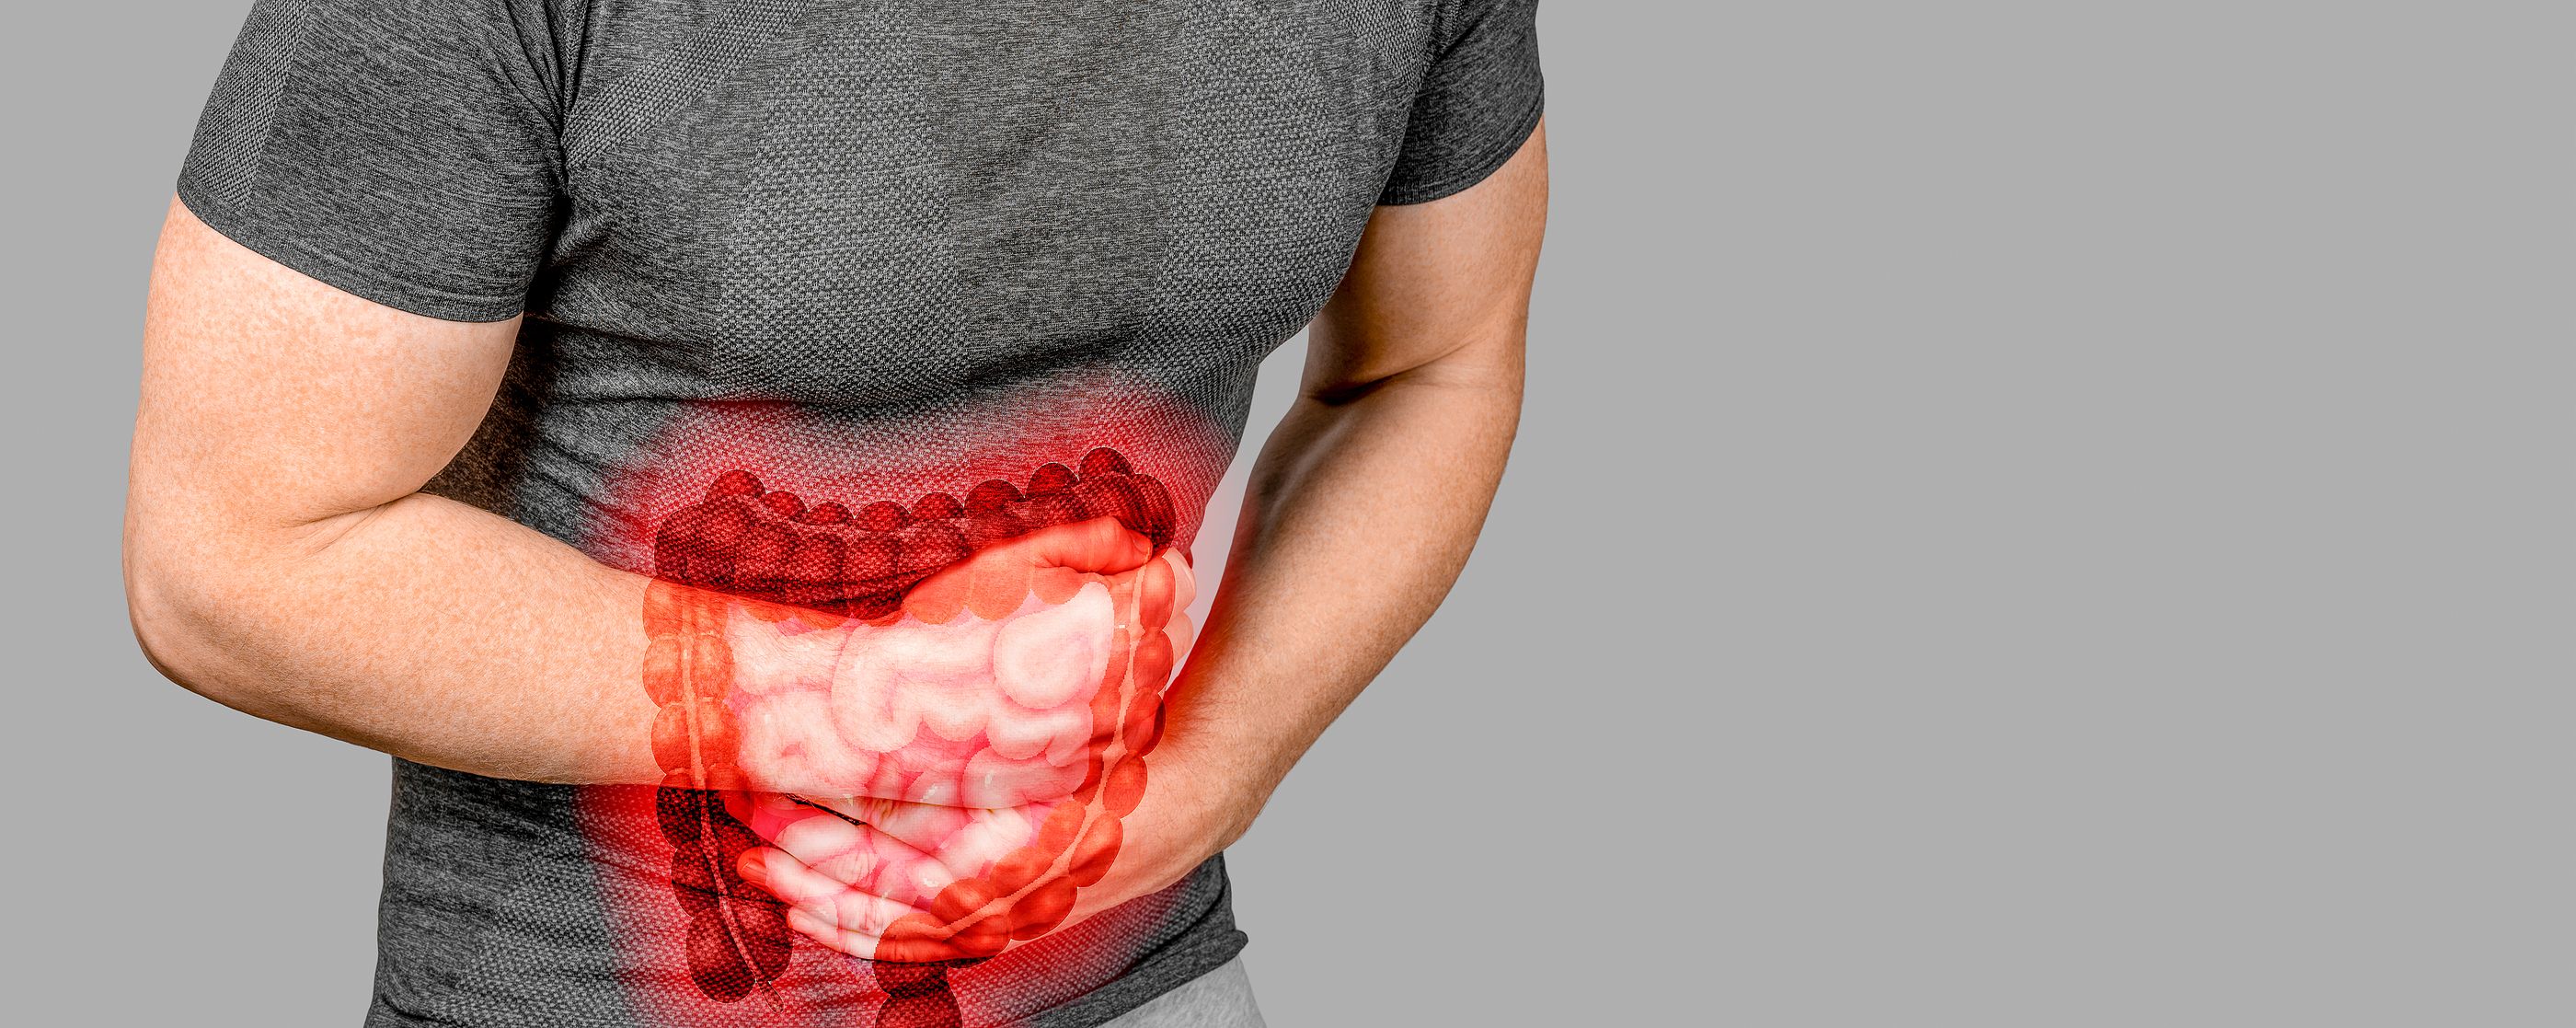 Los pacientes con síndrome del intestino irritable sufren más fibromialgia y fatiga crónica (BigStock)